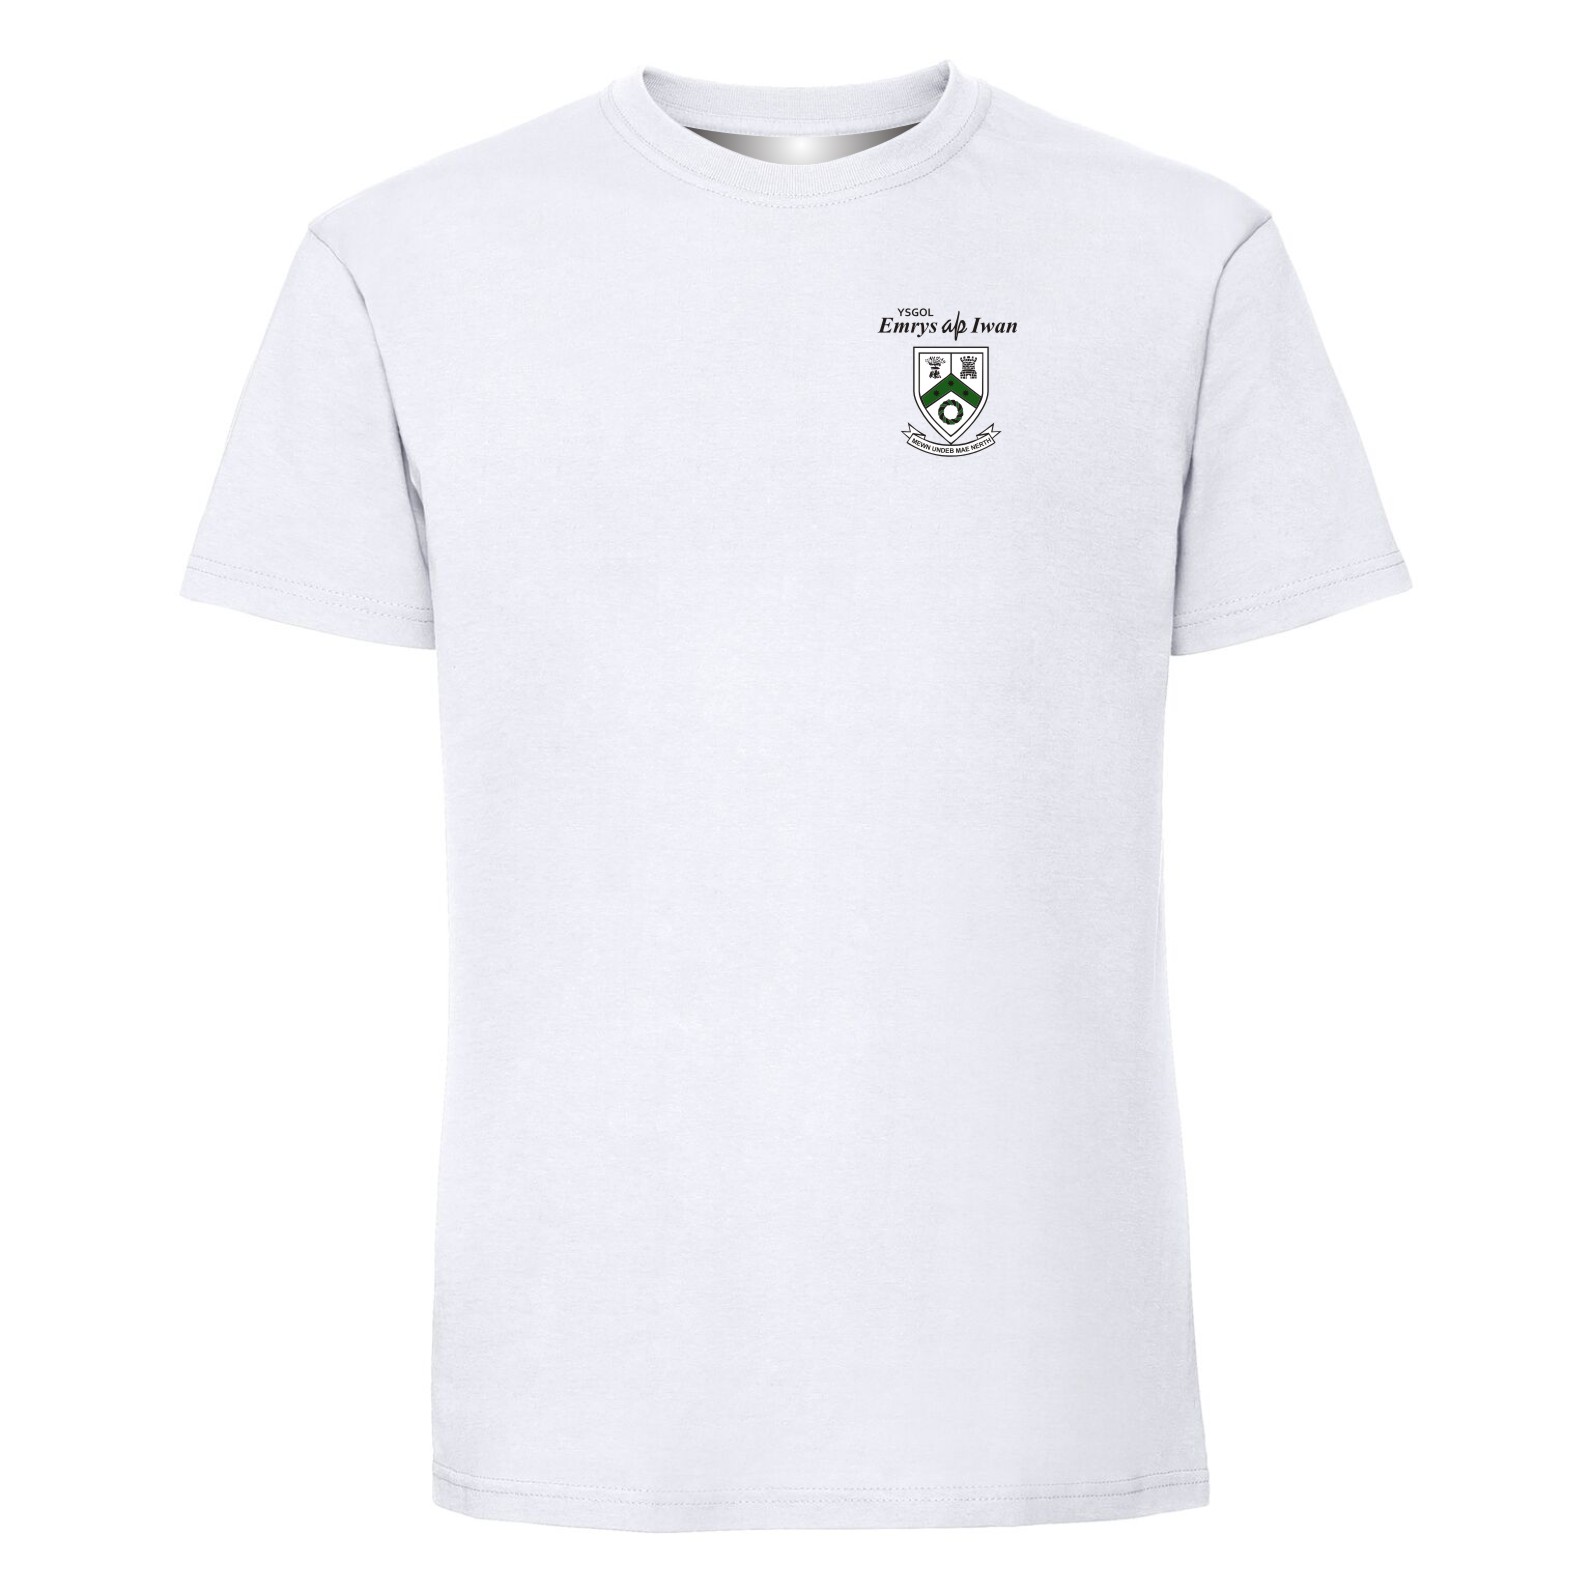 Ysgol Emrys ap Iwan Year 7,8,9 PE T-Shirt - Teejac